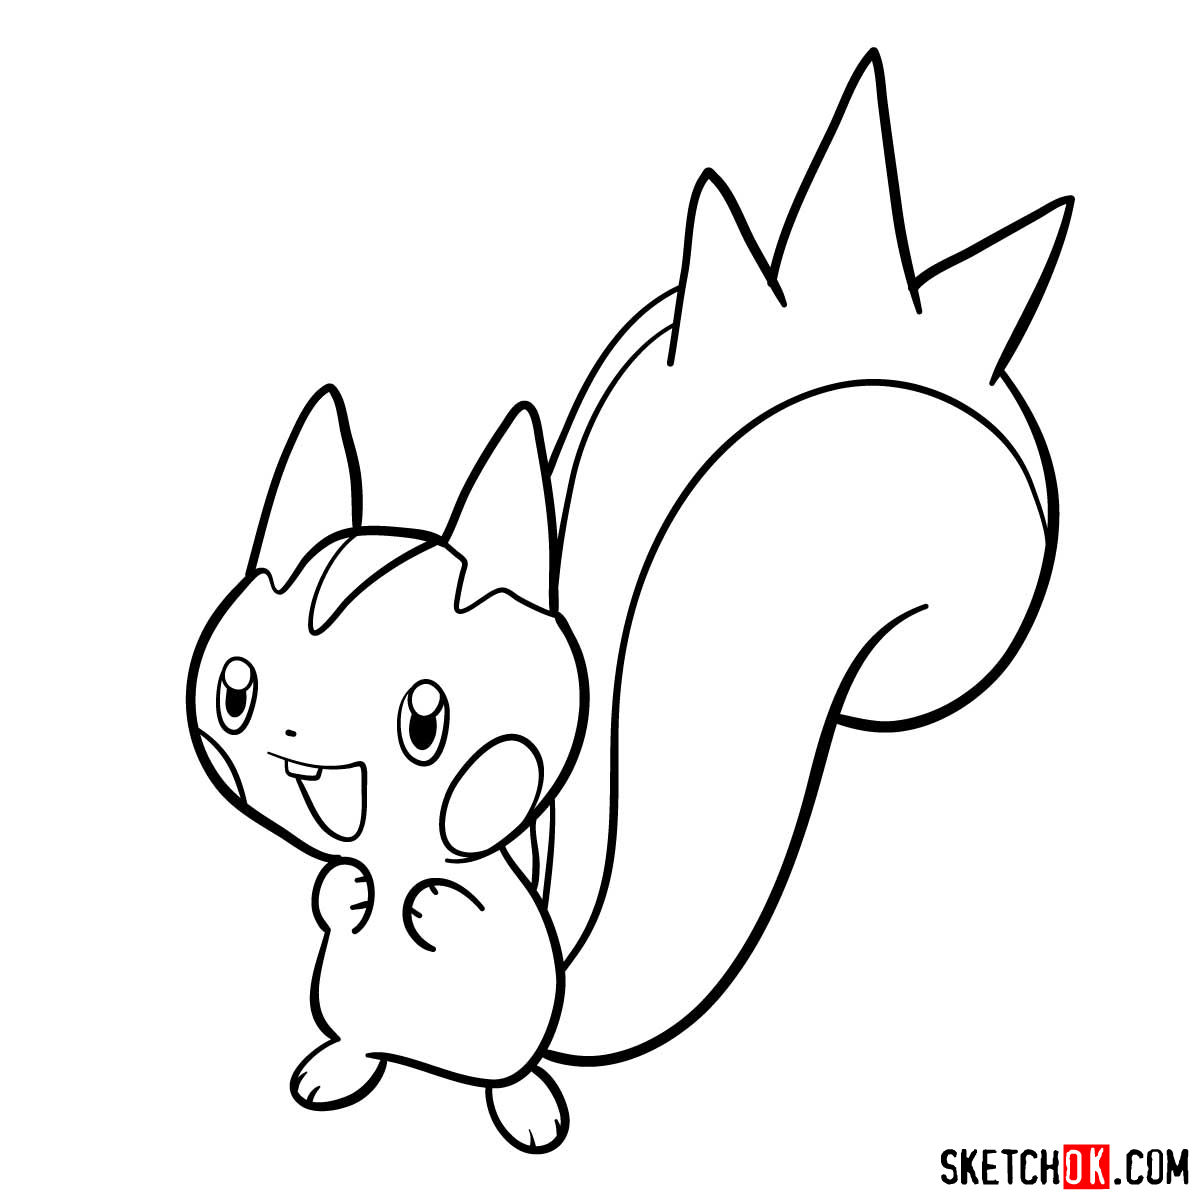 How to draw Pachirisu Pokemon - step 09